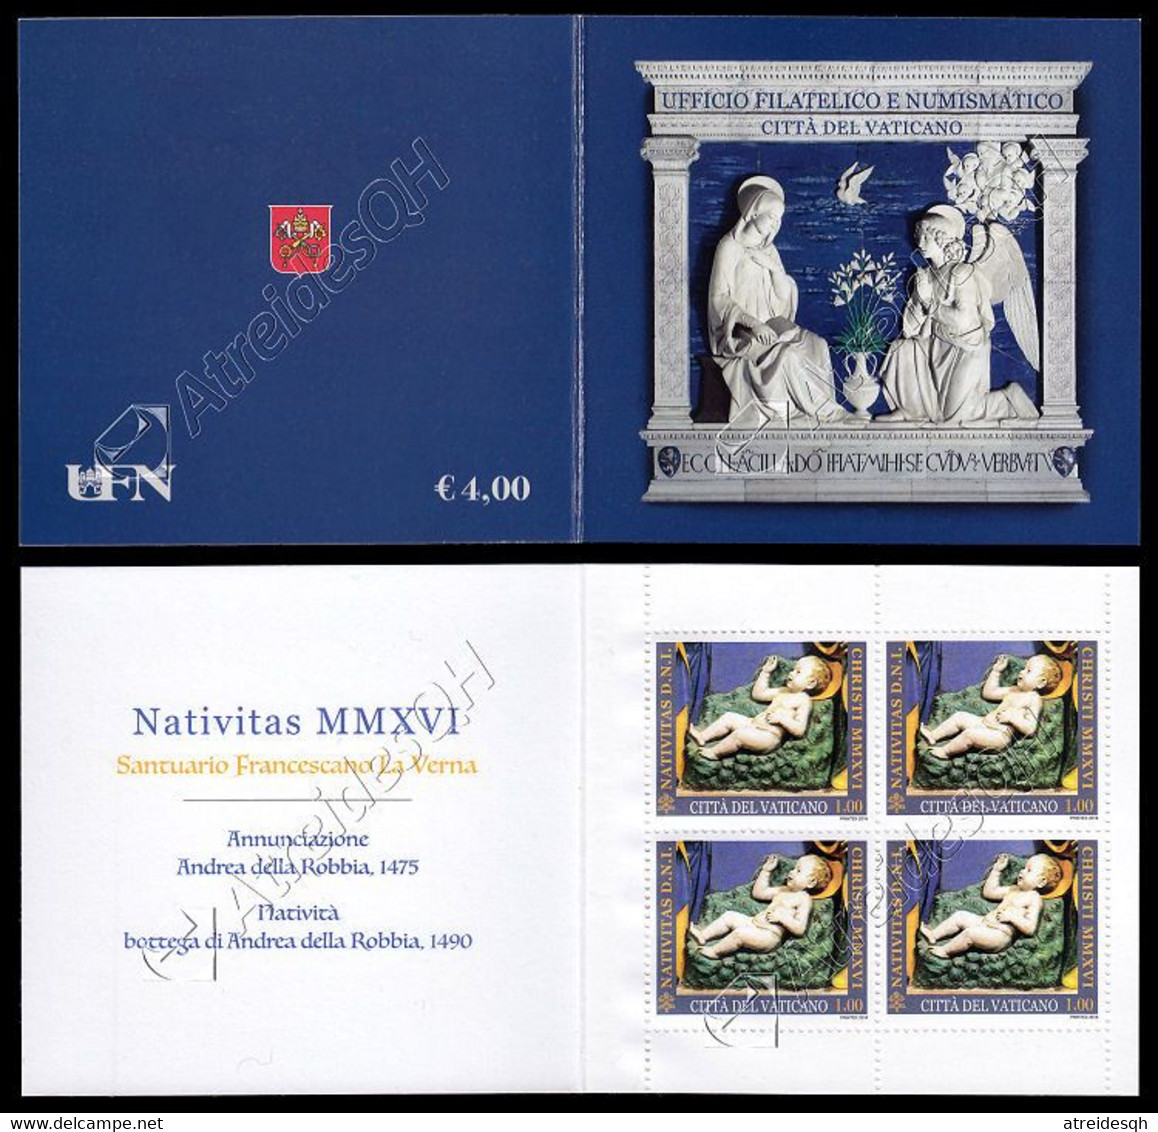 [Q] Vaticano / Vatican 2016: Libretto Natale / Christmas Booklet ** - Carnets